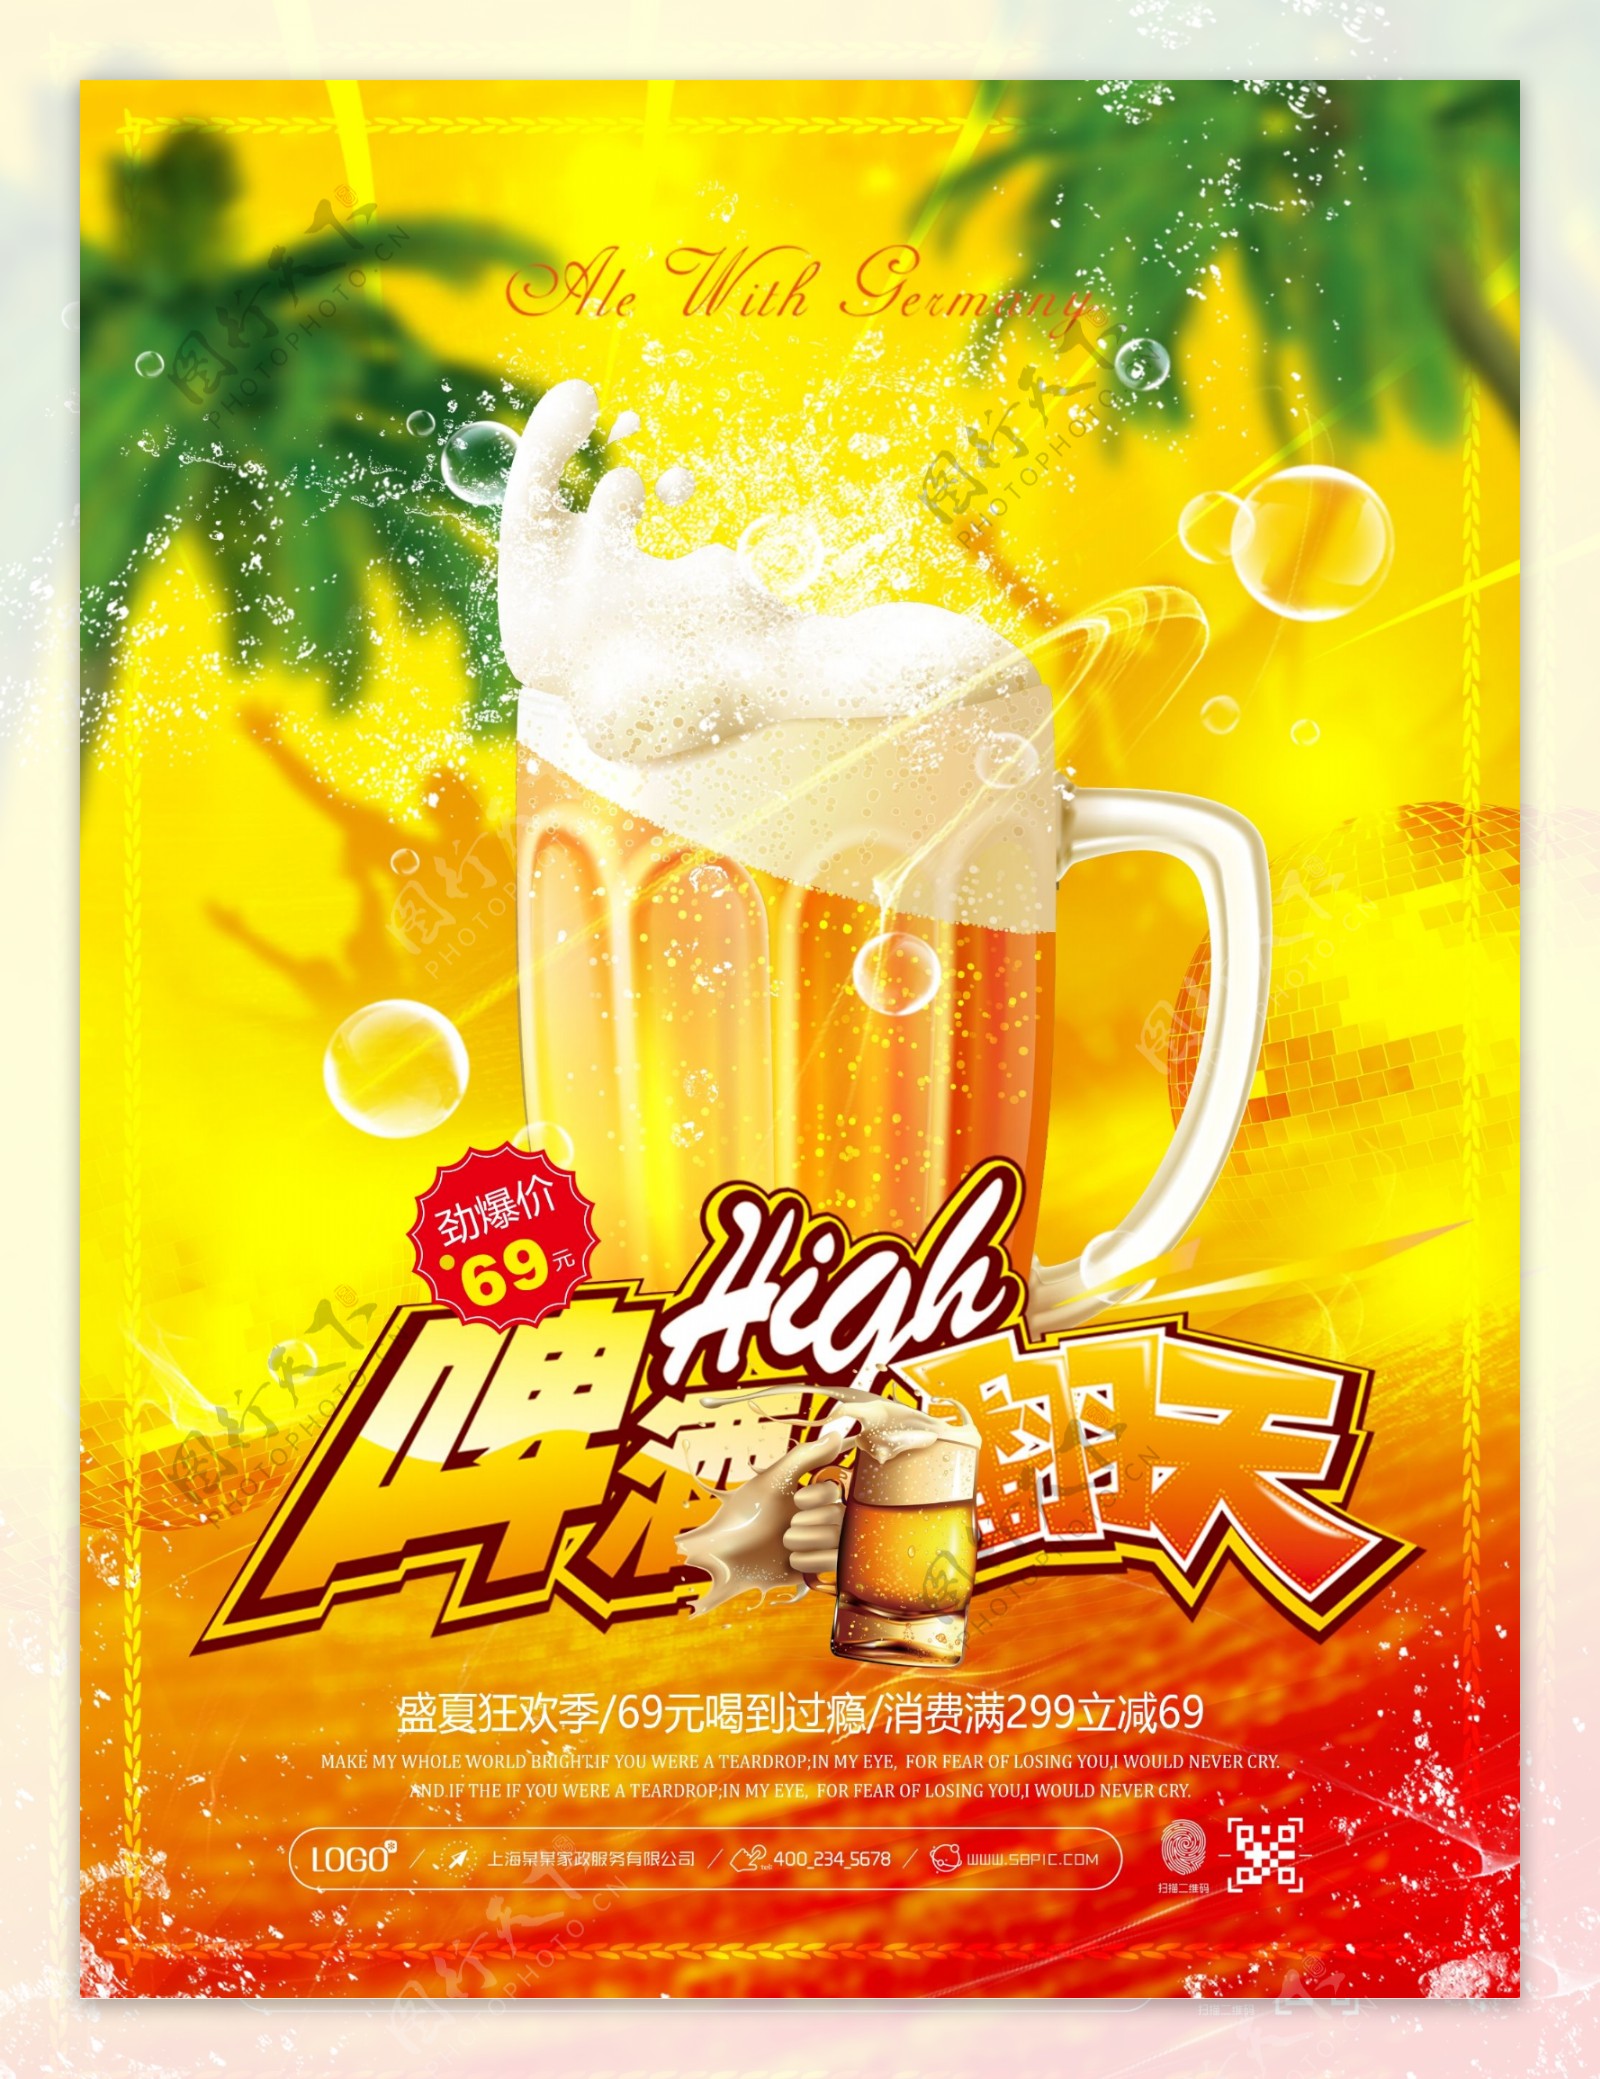 夏季啤酒嗨翻天活动促销宣传海报